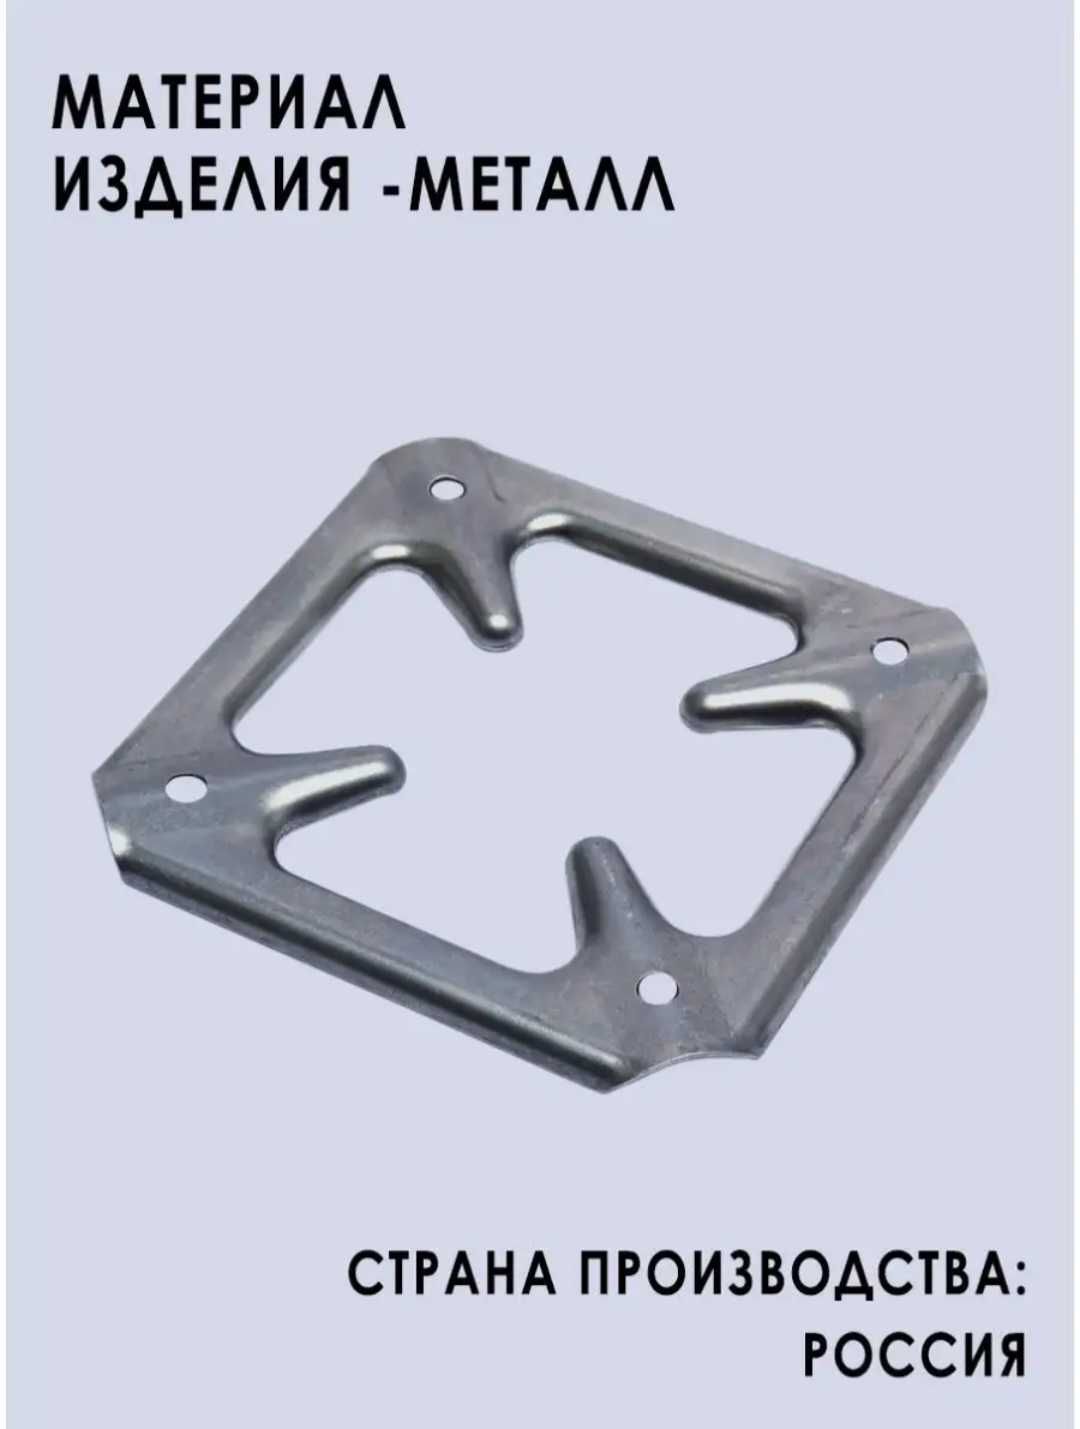 Подставка для газовых плит (Россия)